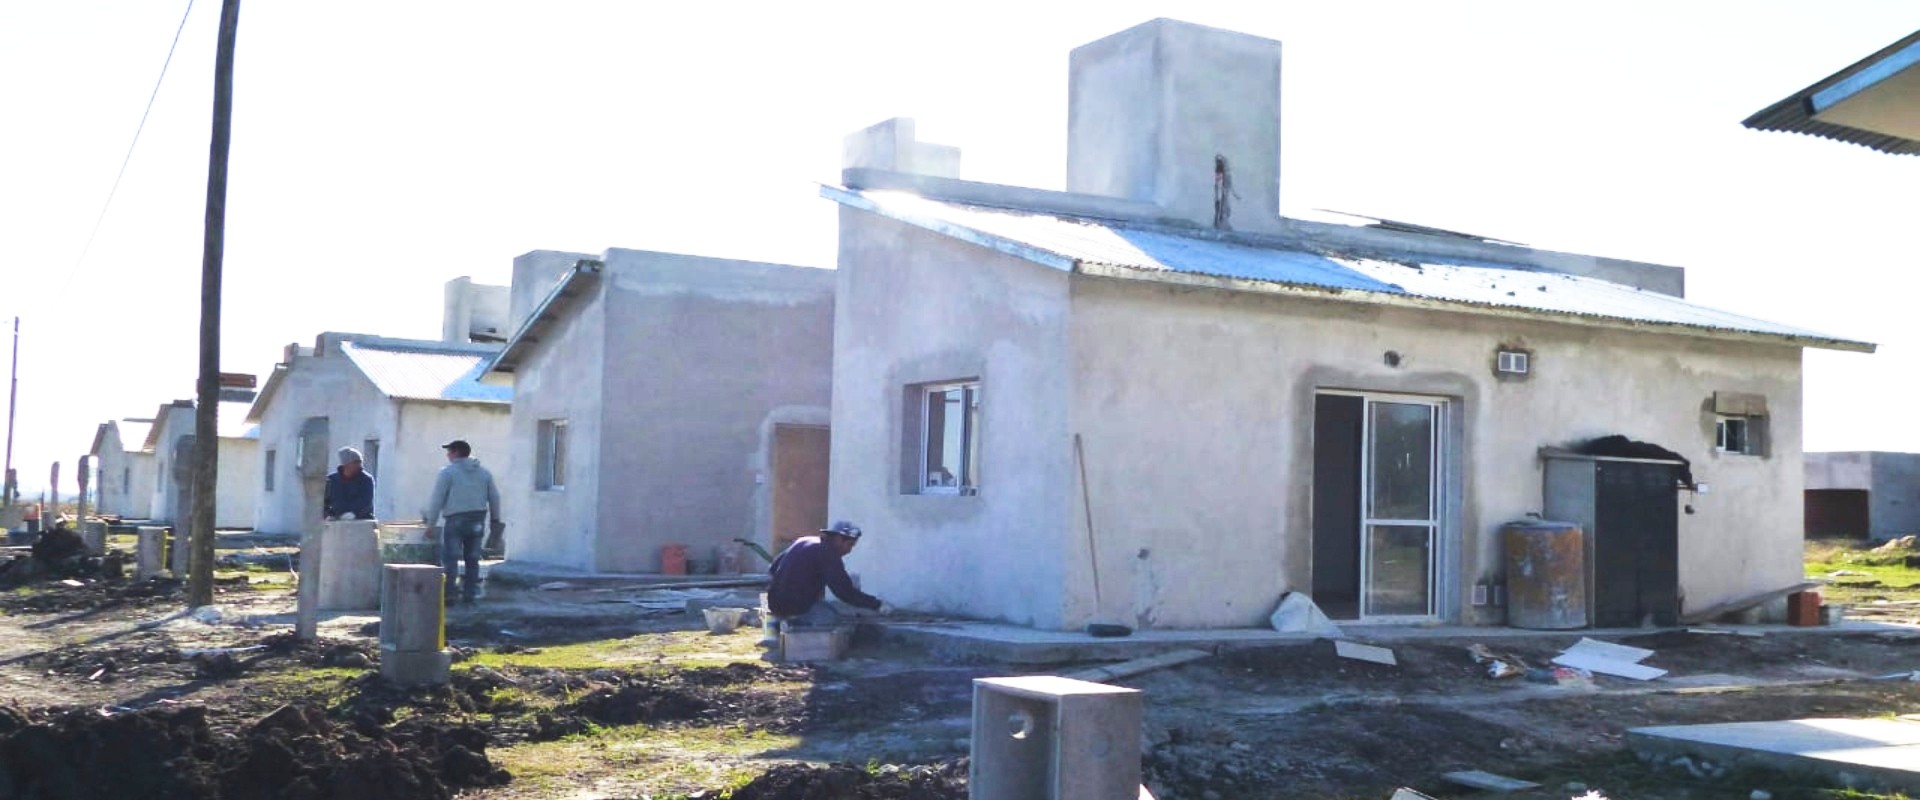 Comenzaron a construirse con recursos provinciales 45 viviendas en cuatro localidades entrerrianas